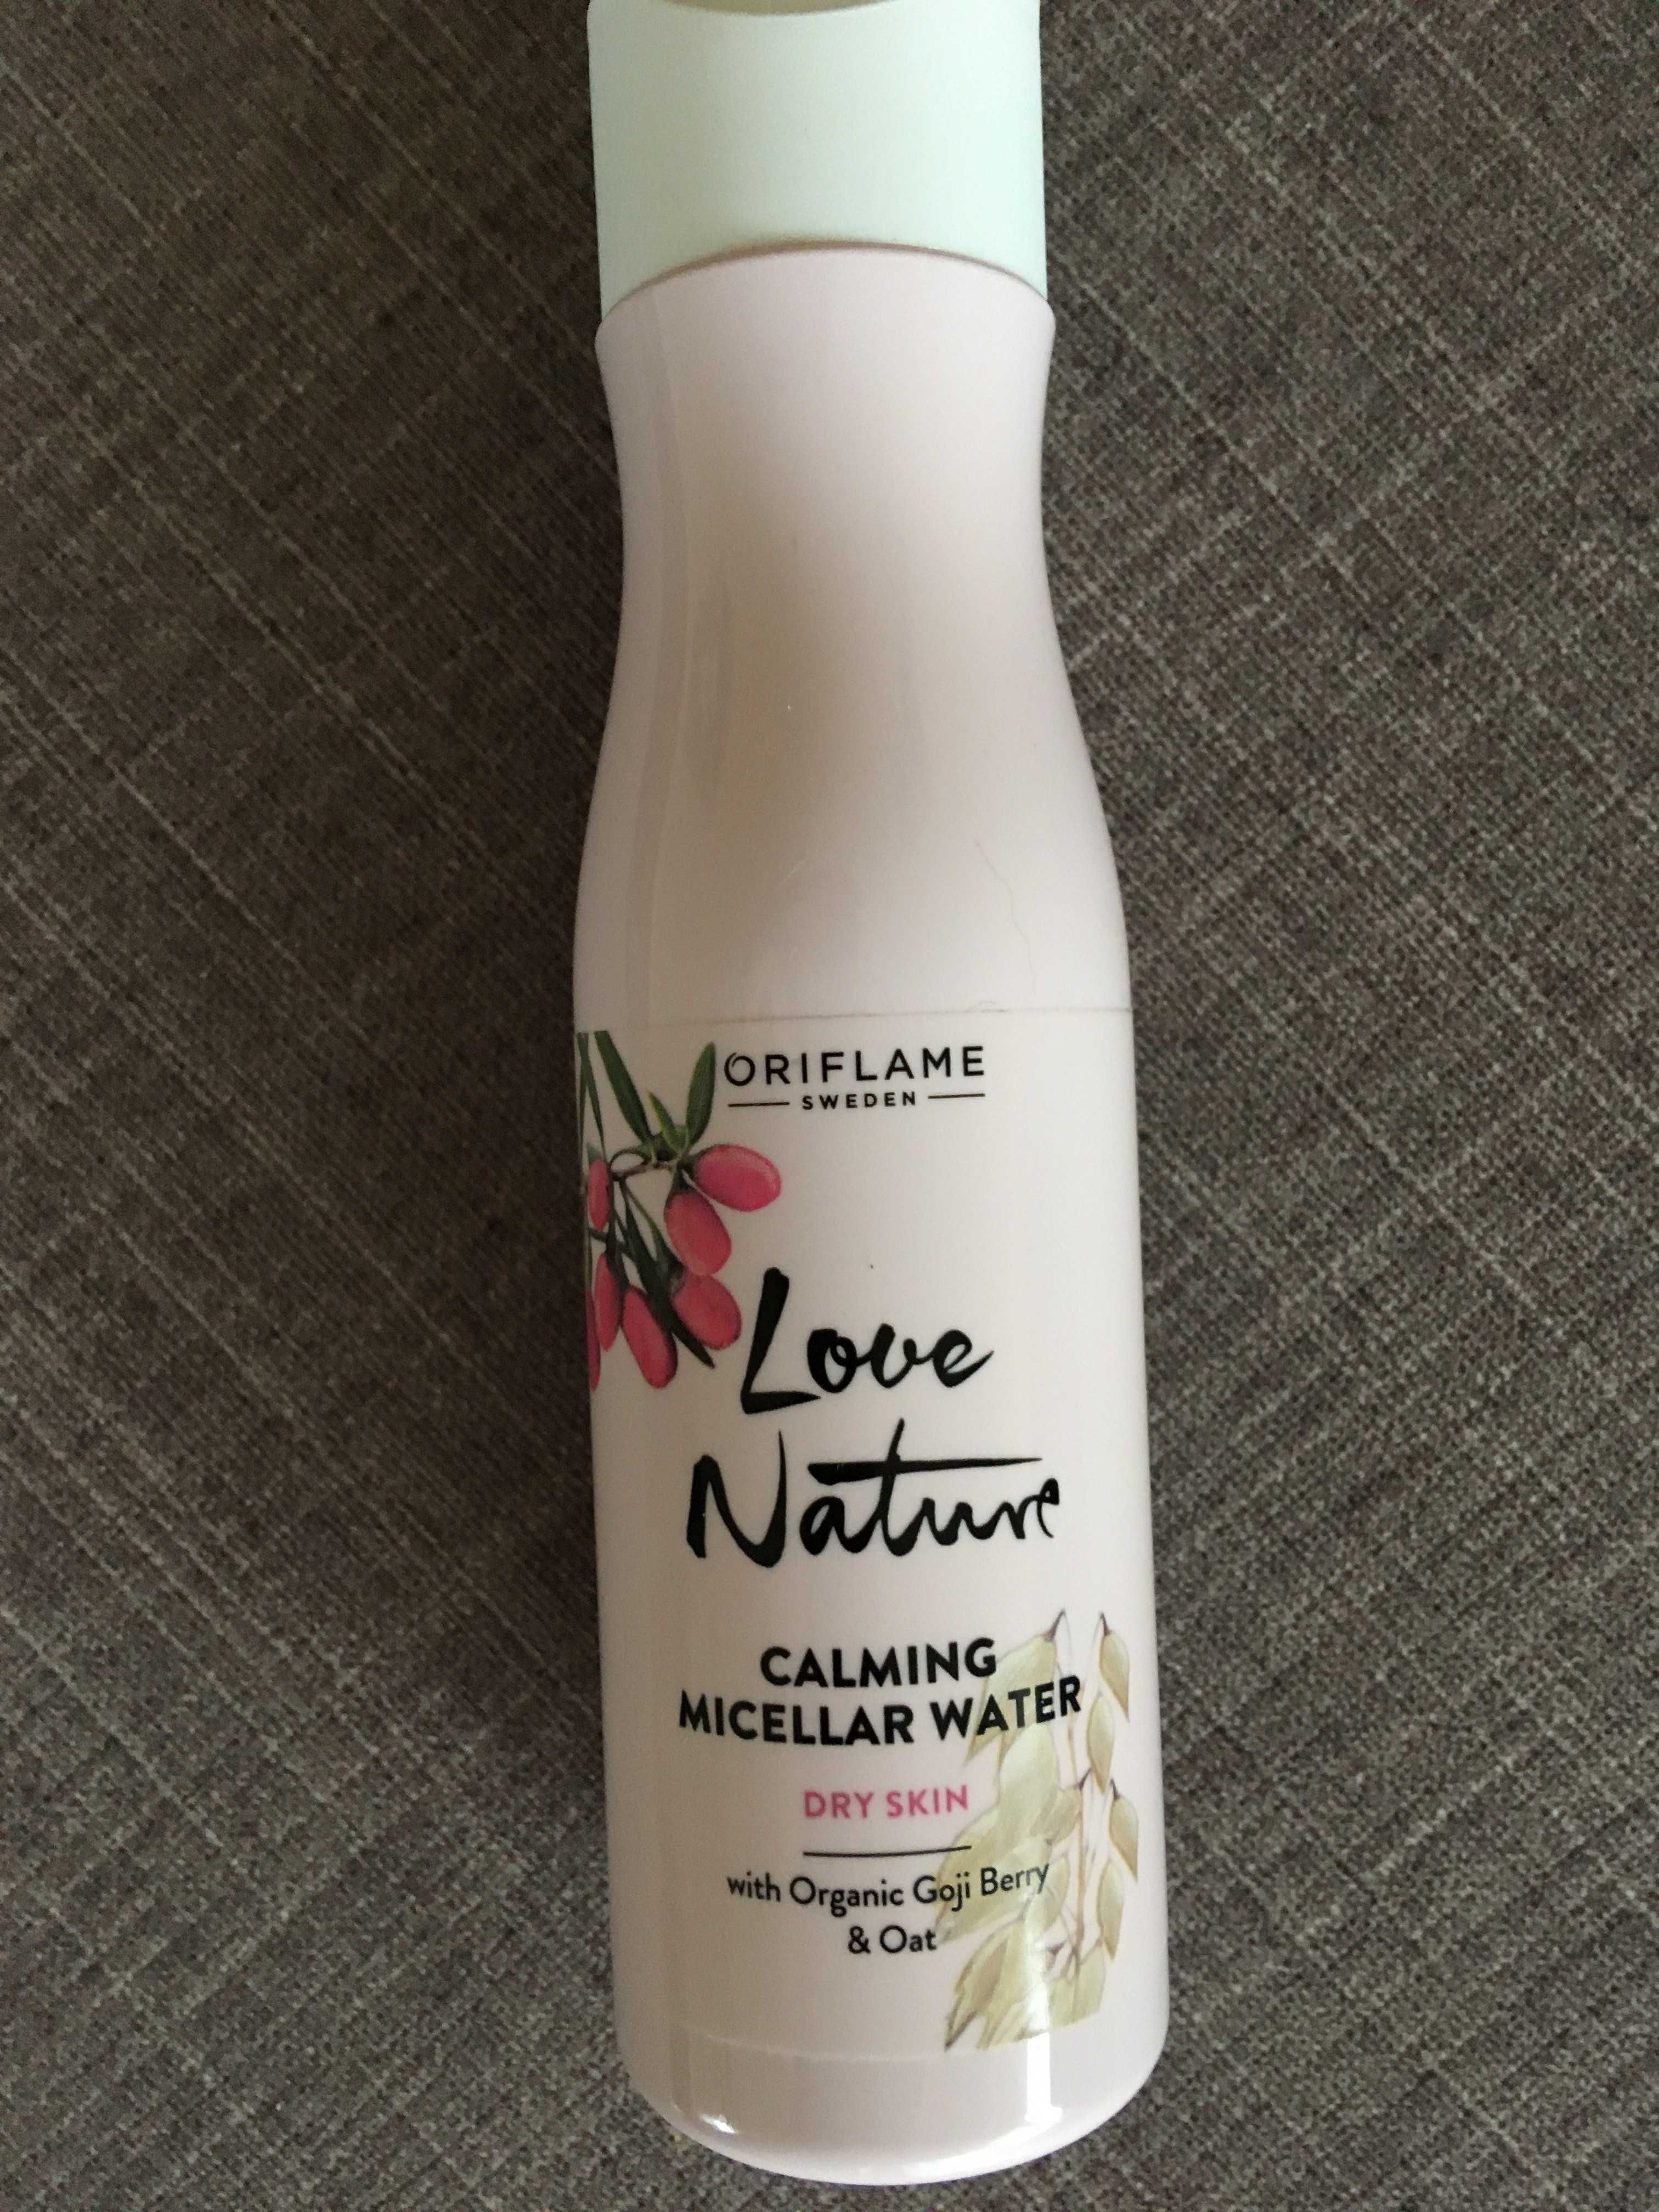 Płyn micelarny LOVE NATURE z firmy Oriflame 150 ml, nowy.